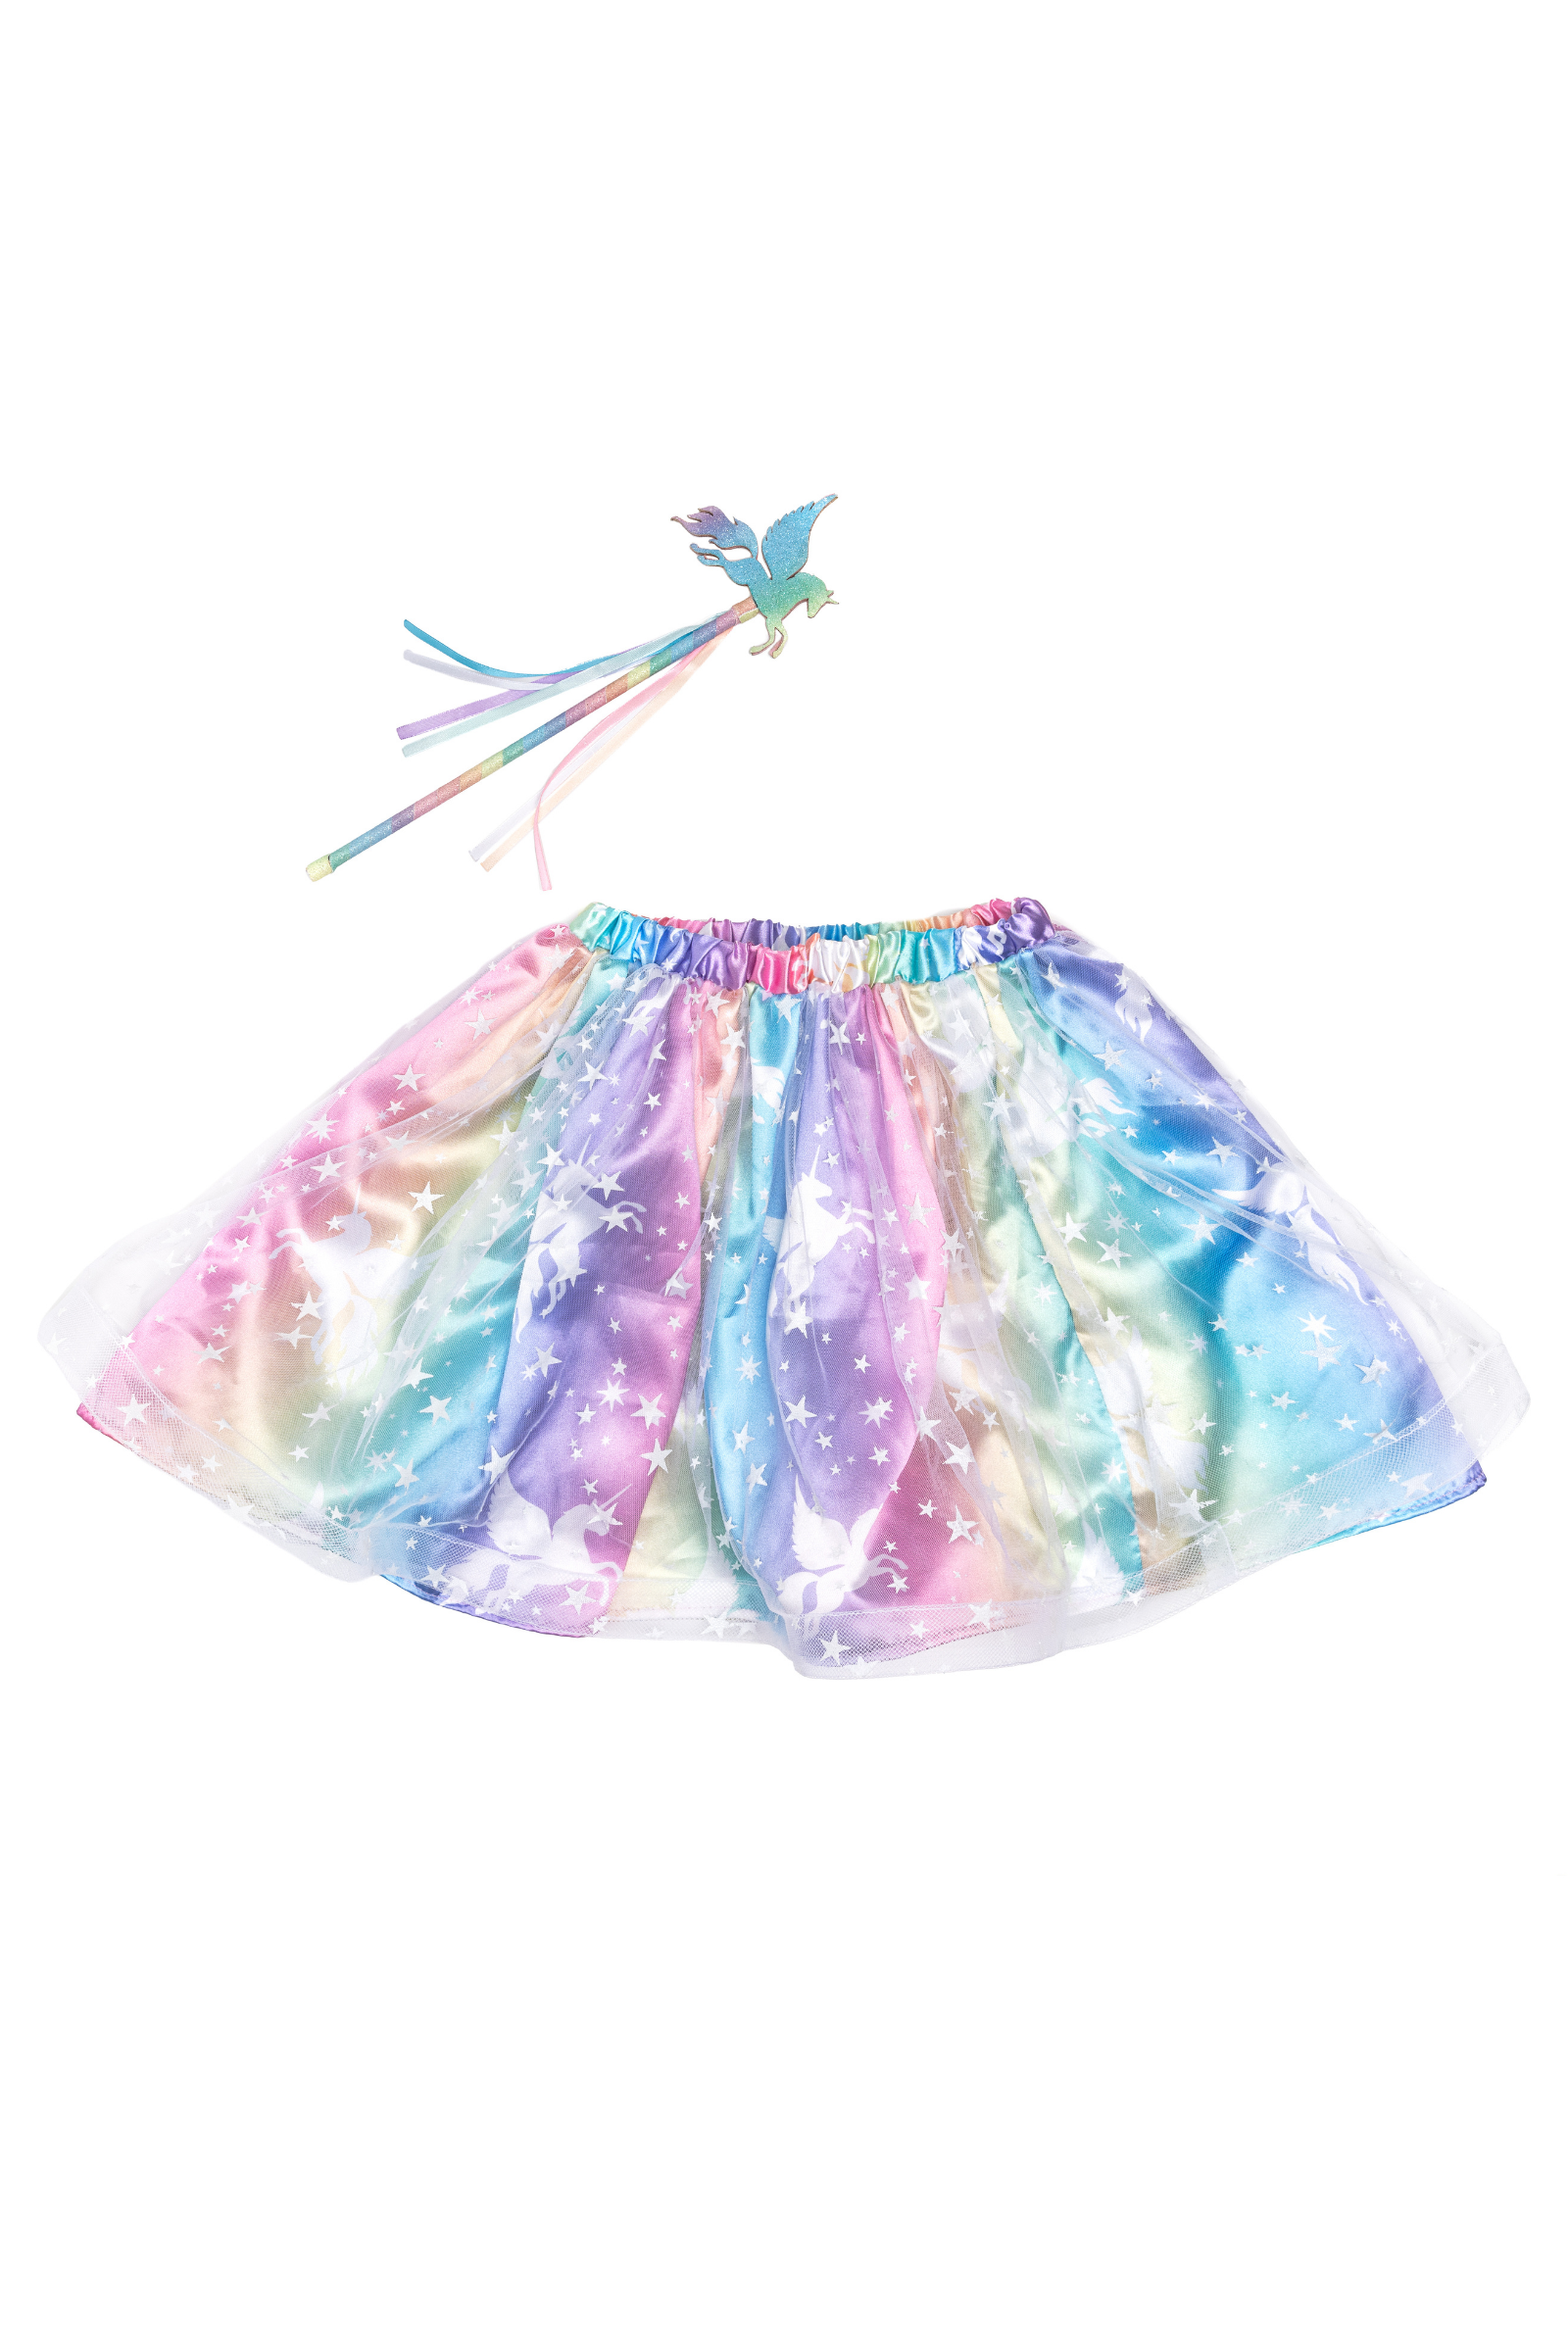 Enchanted Unicorn Skirt & Wand Set